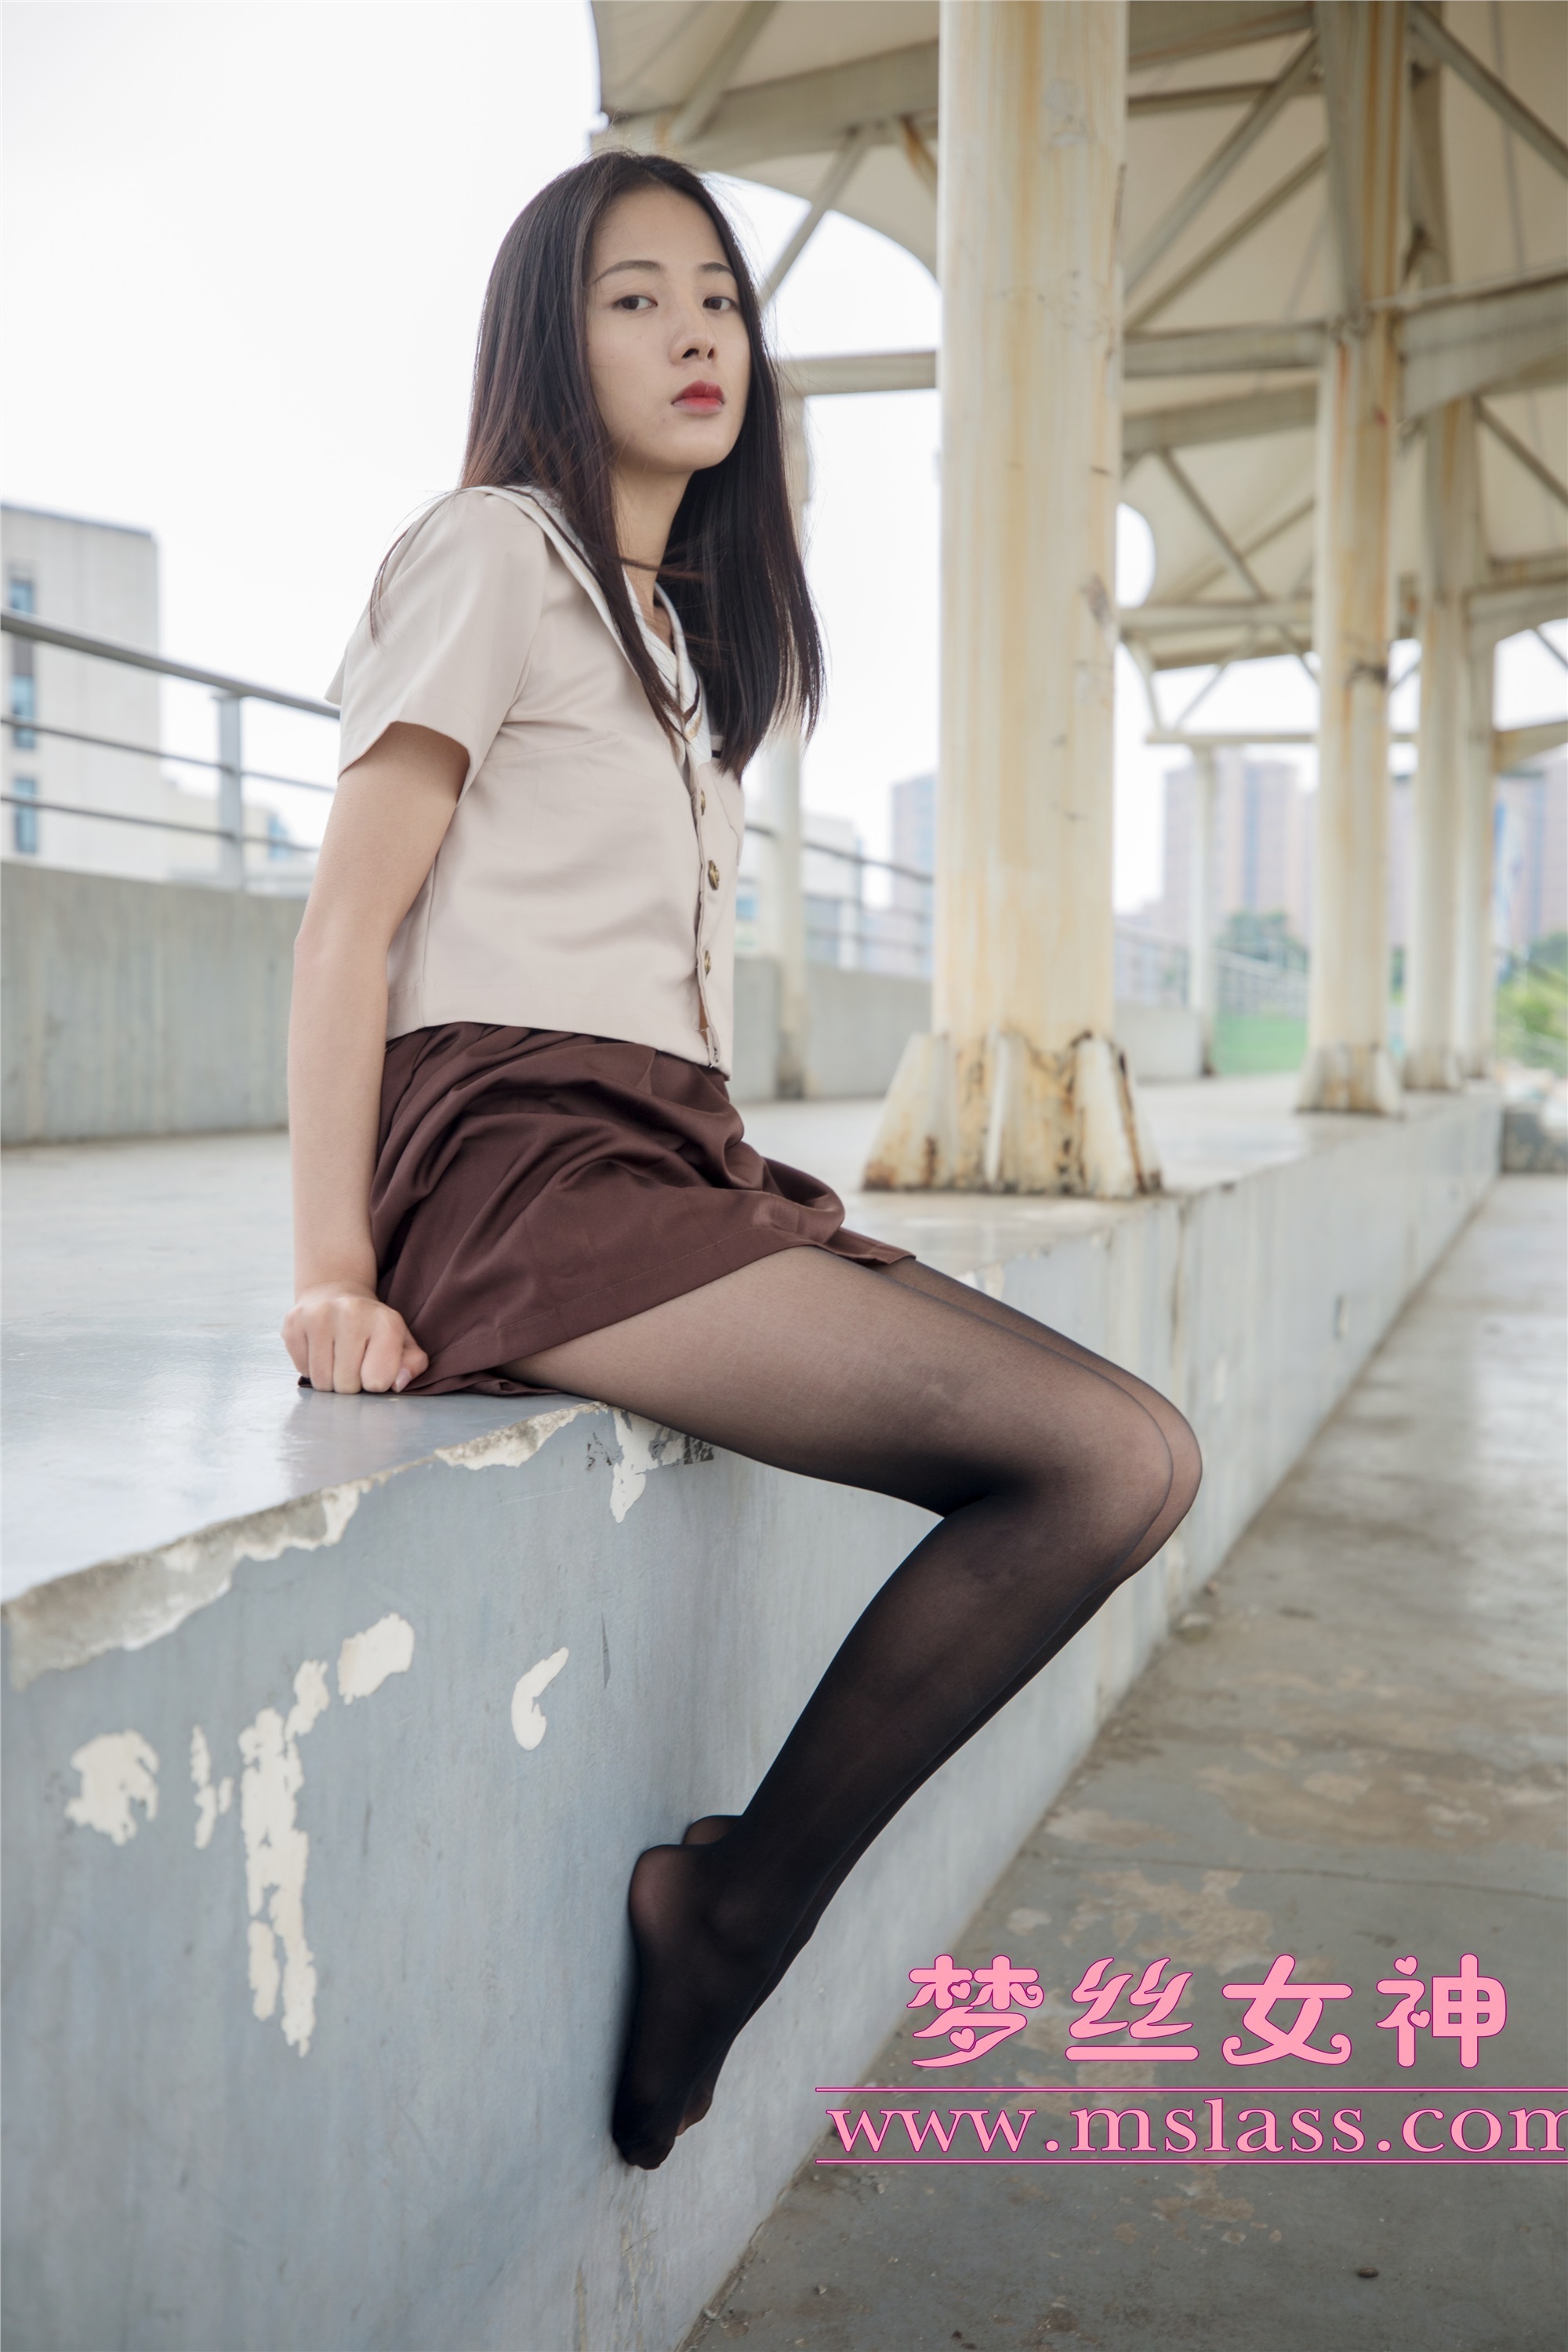 Mslass dream silk goddess JK black stockings of Xuexin College